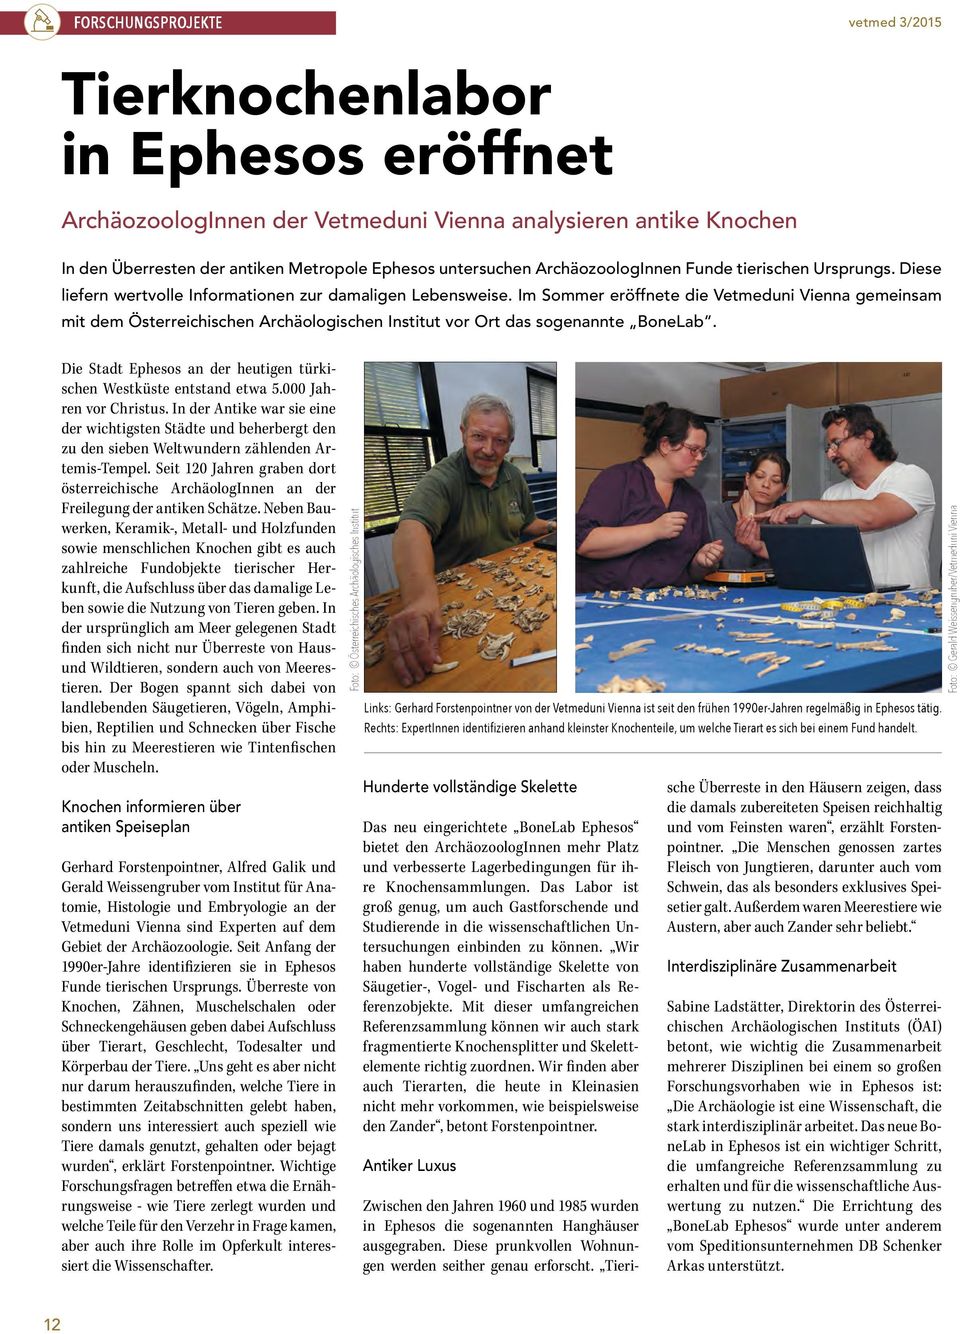 Im Sommer eröffnete die Vetmeduni Vienna gemeinsam mit dem Österreichischen Archäologischen Institut vor Ort das sogenannte BoneLab.